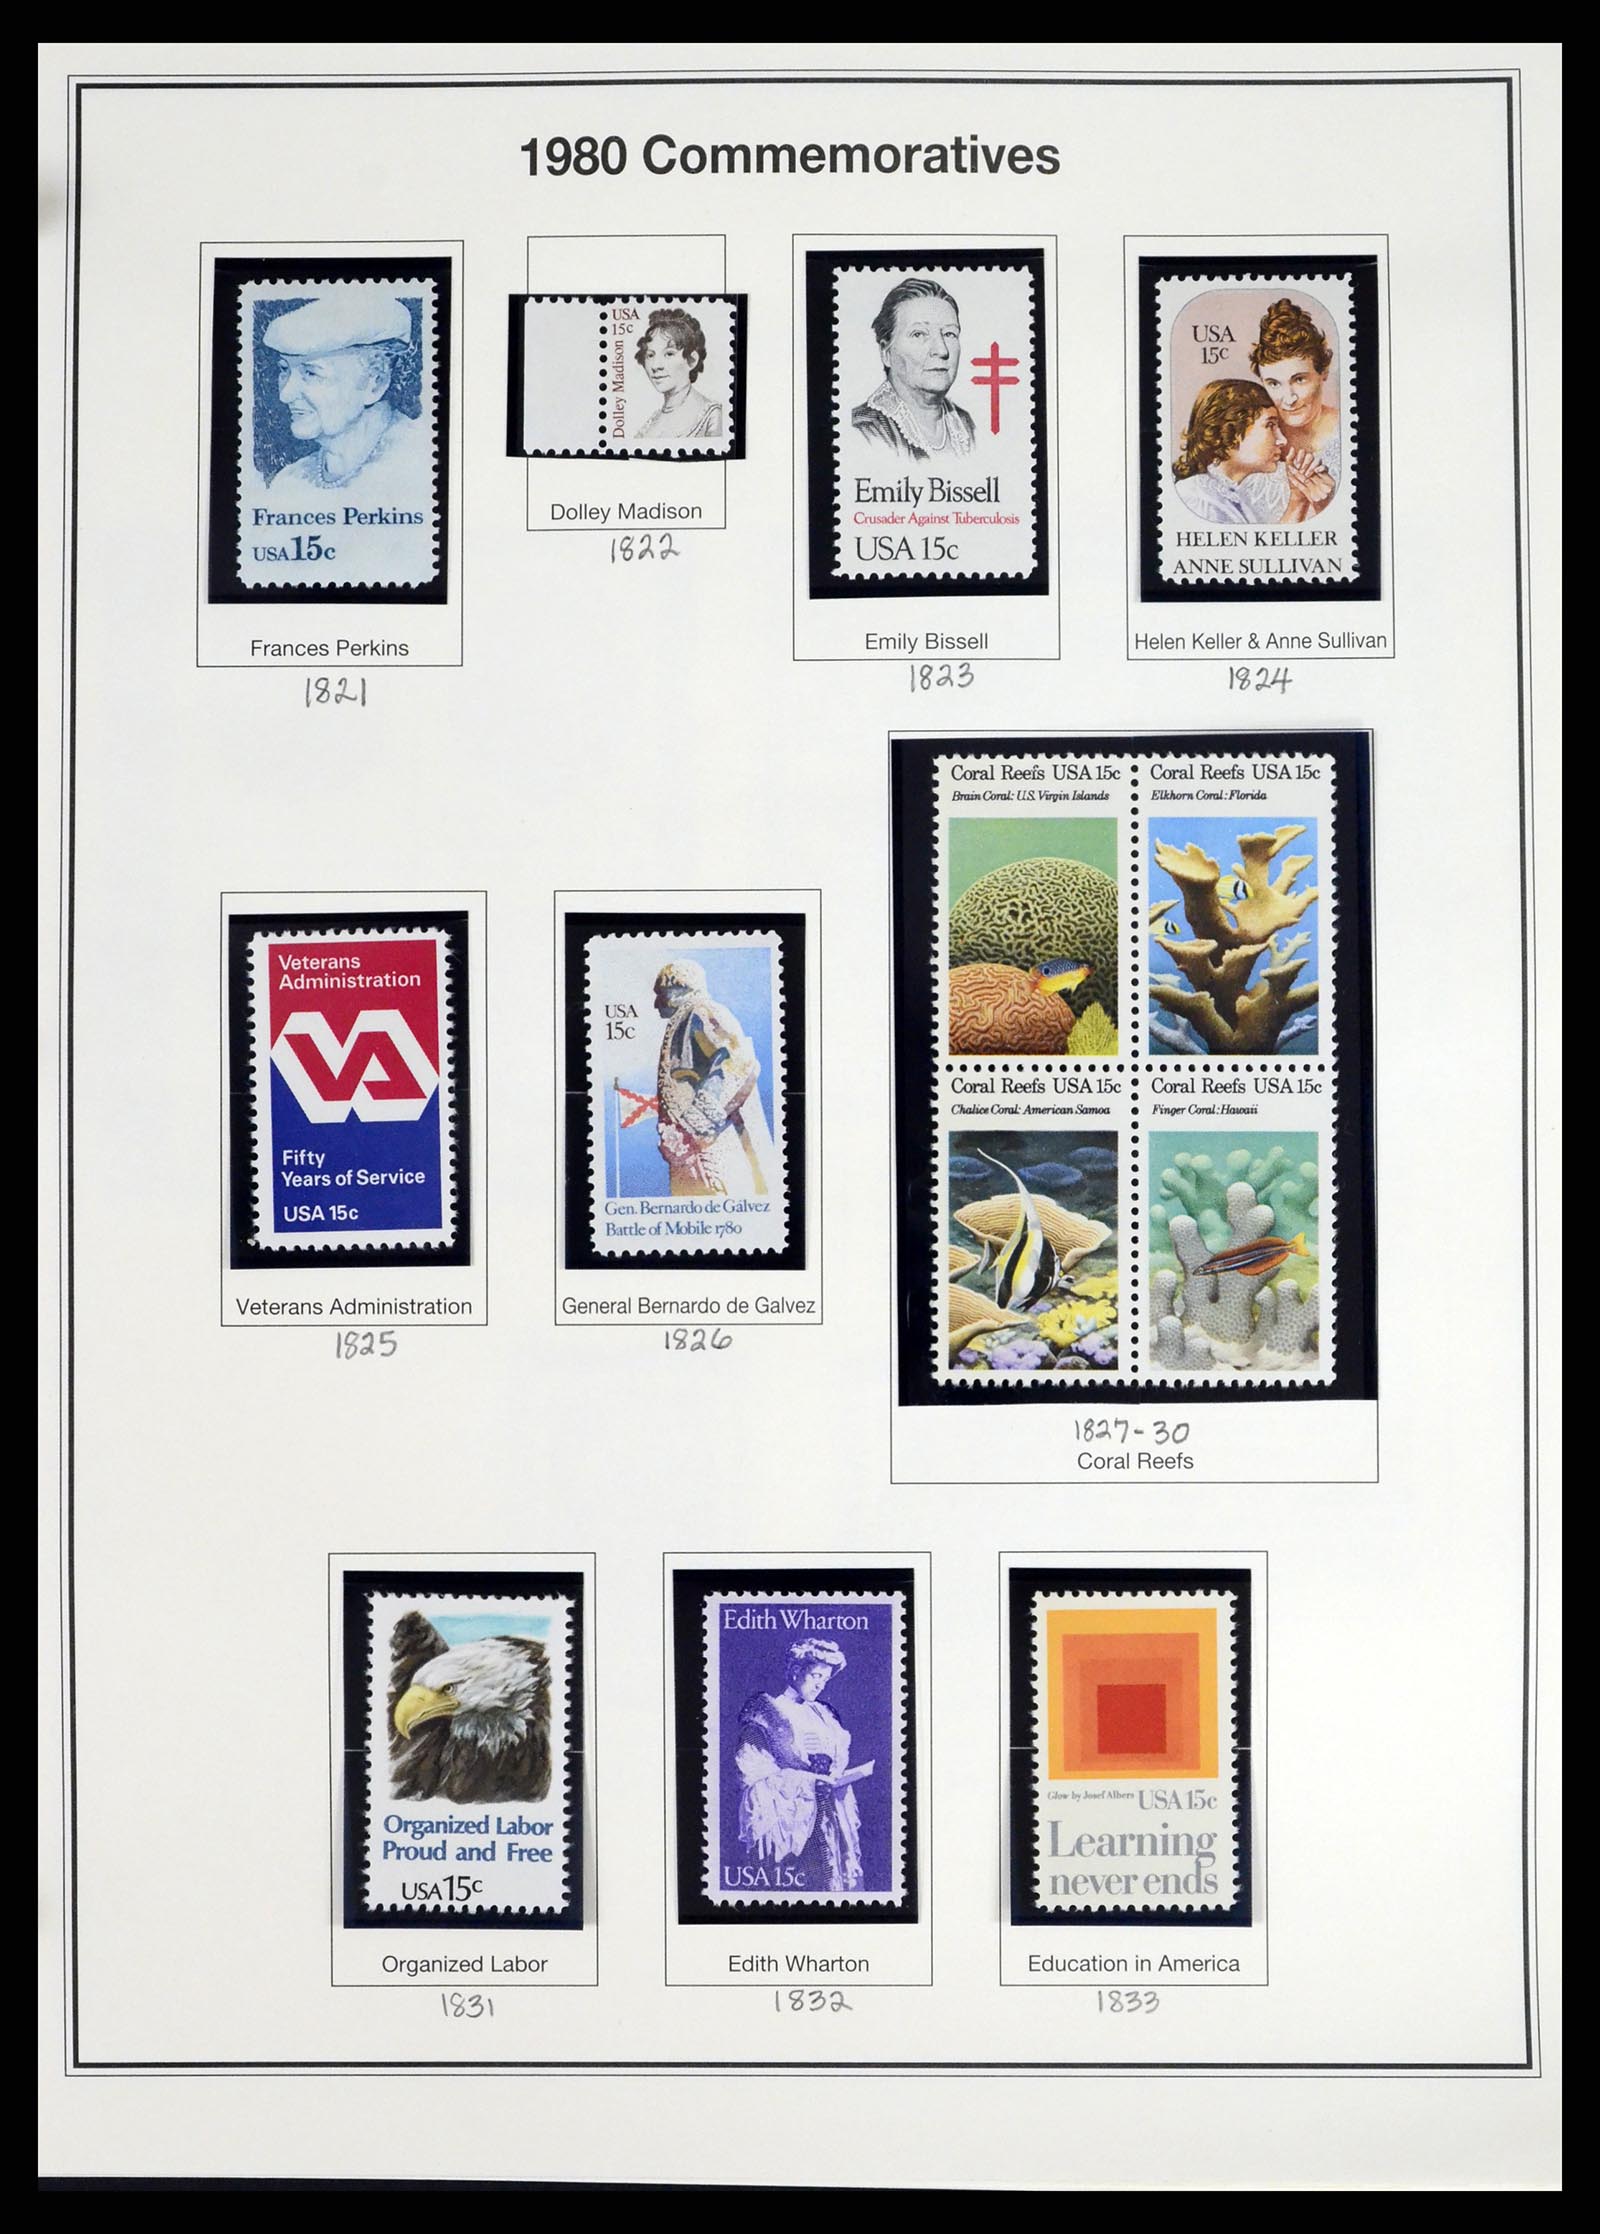 37193 052 - Stamp collection 37193 USA 1970-2020!